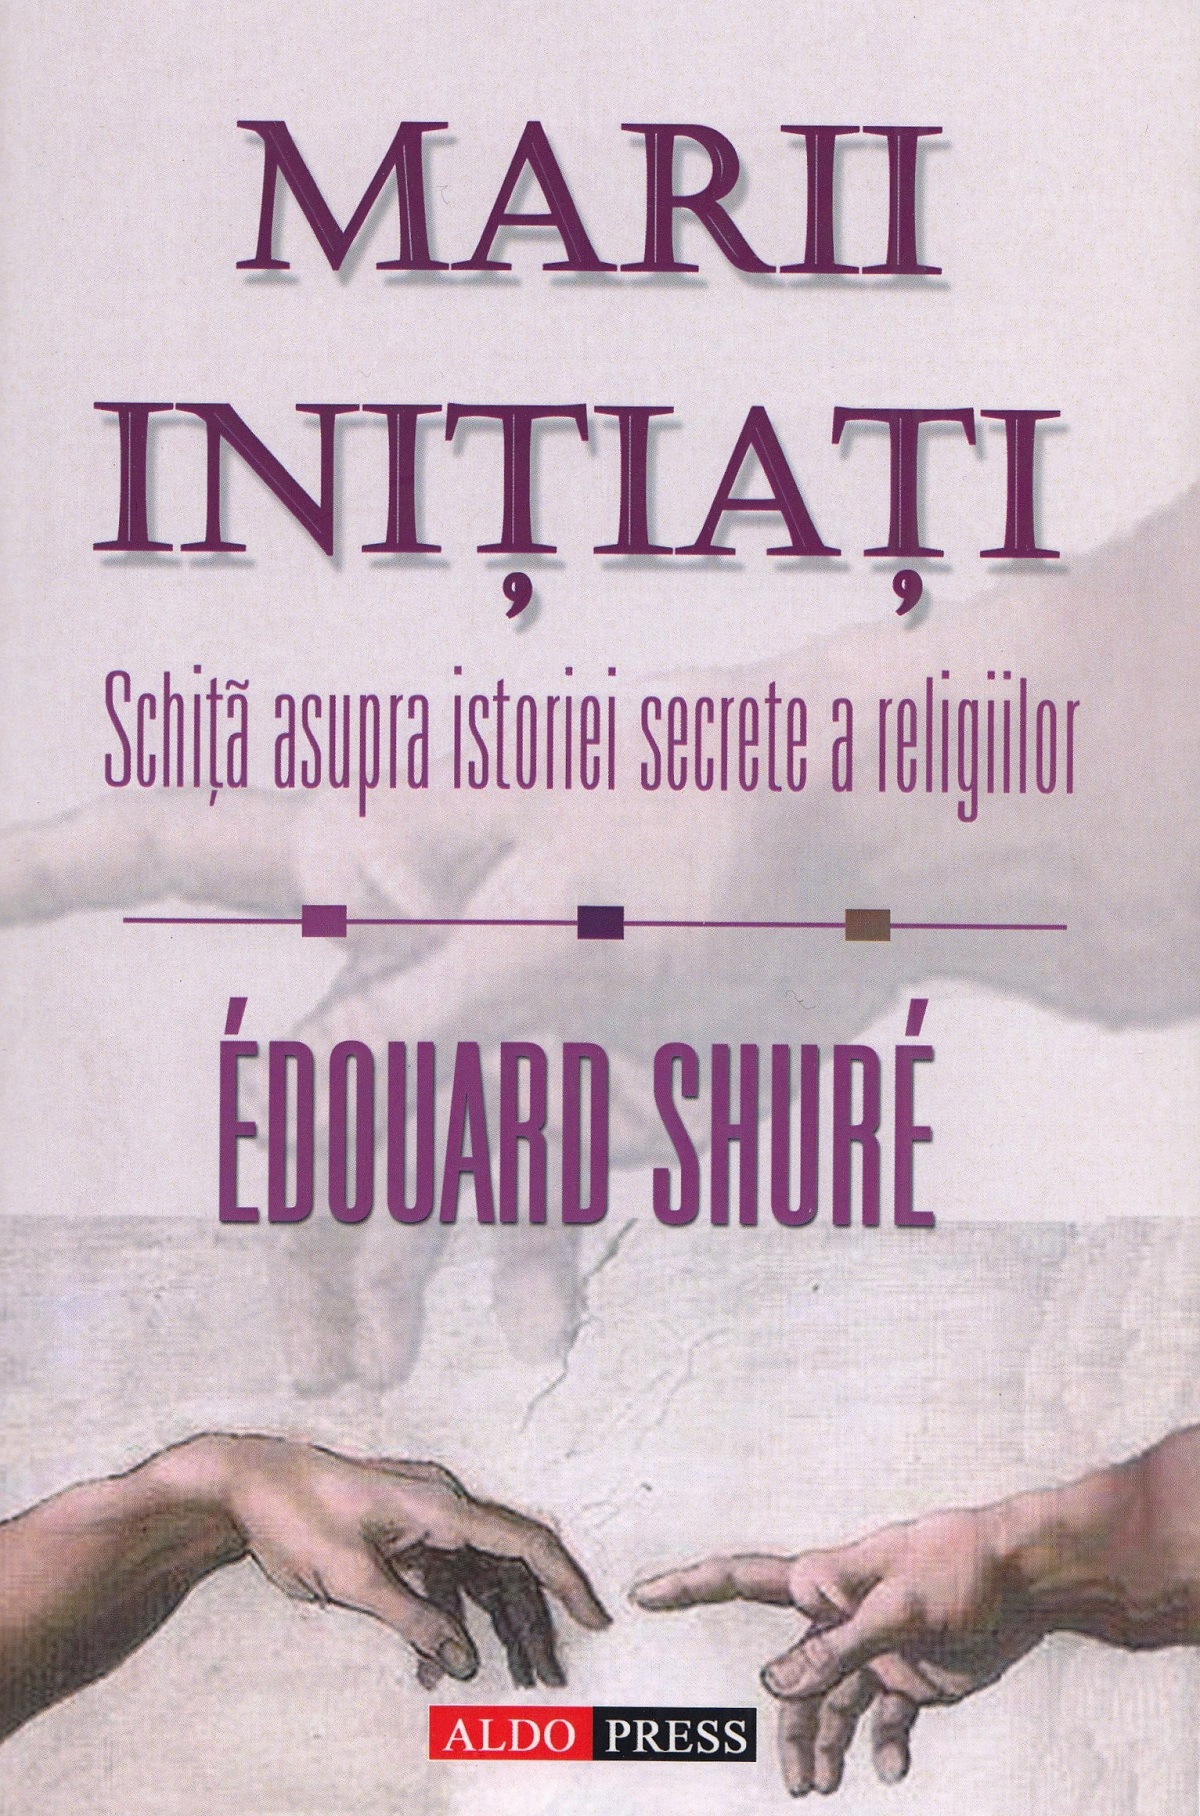 Marii initiati - Edouard Shure